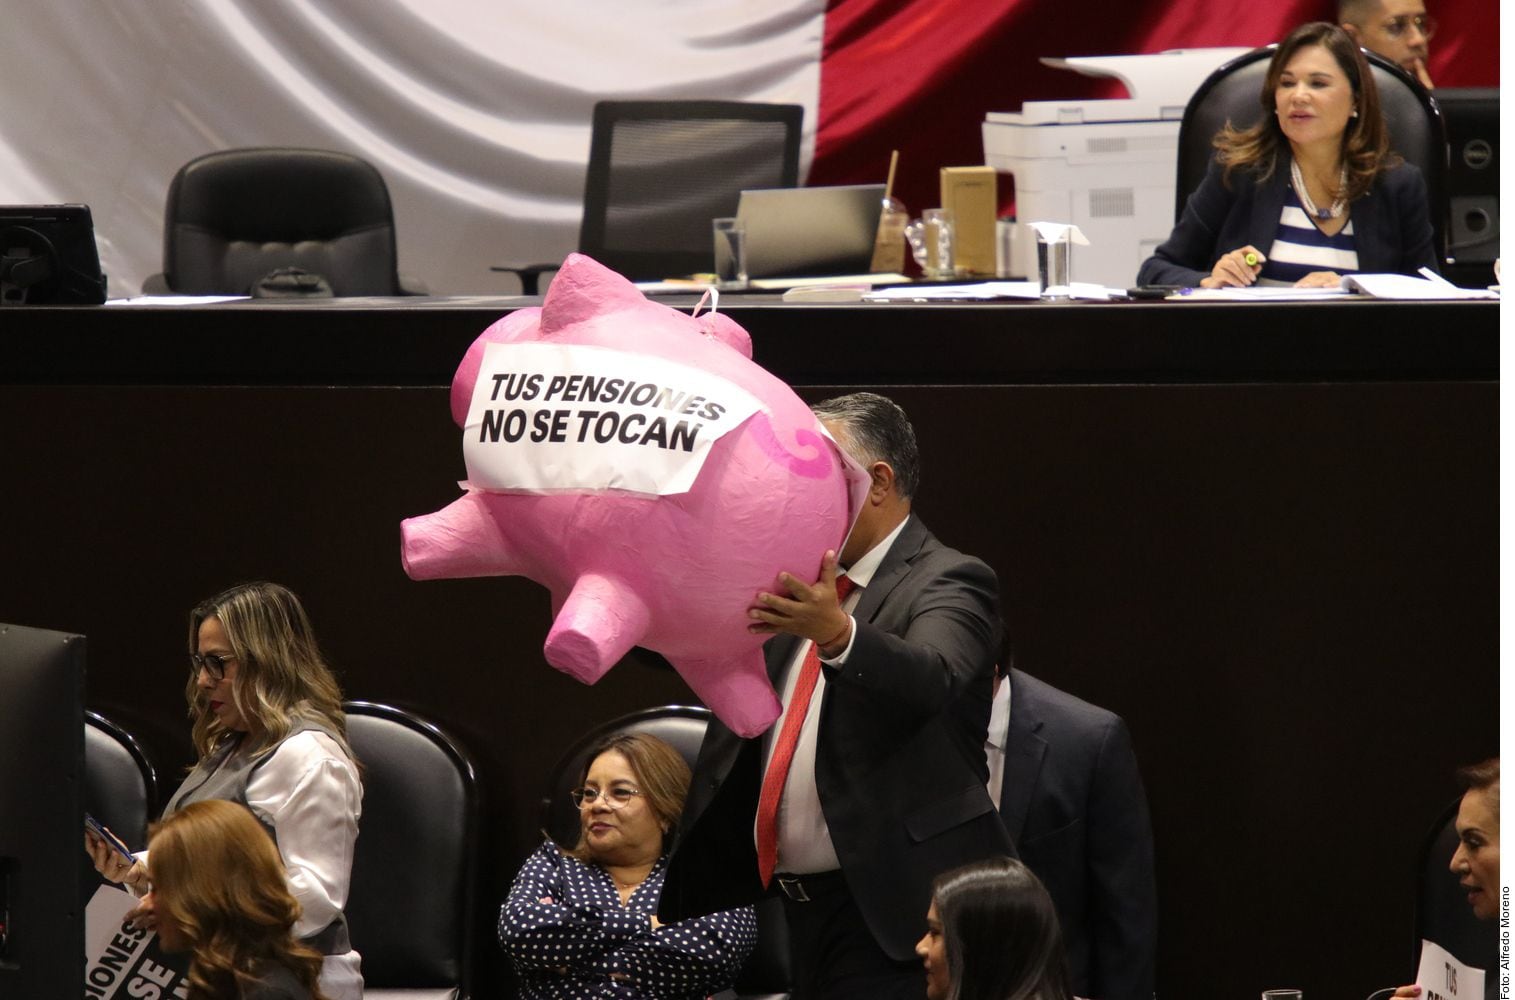 En medio de protestas de la oposición, diputados de Morena y aliados
avalaron la creación del Fondo de Pensiones, que plantea tomar recursos no reclamados en Afores. FOTO: AGENCIA REFORMA